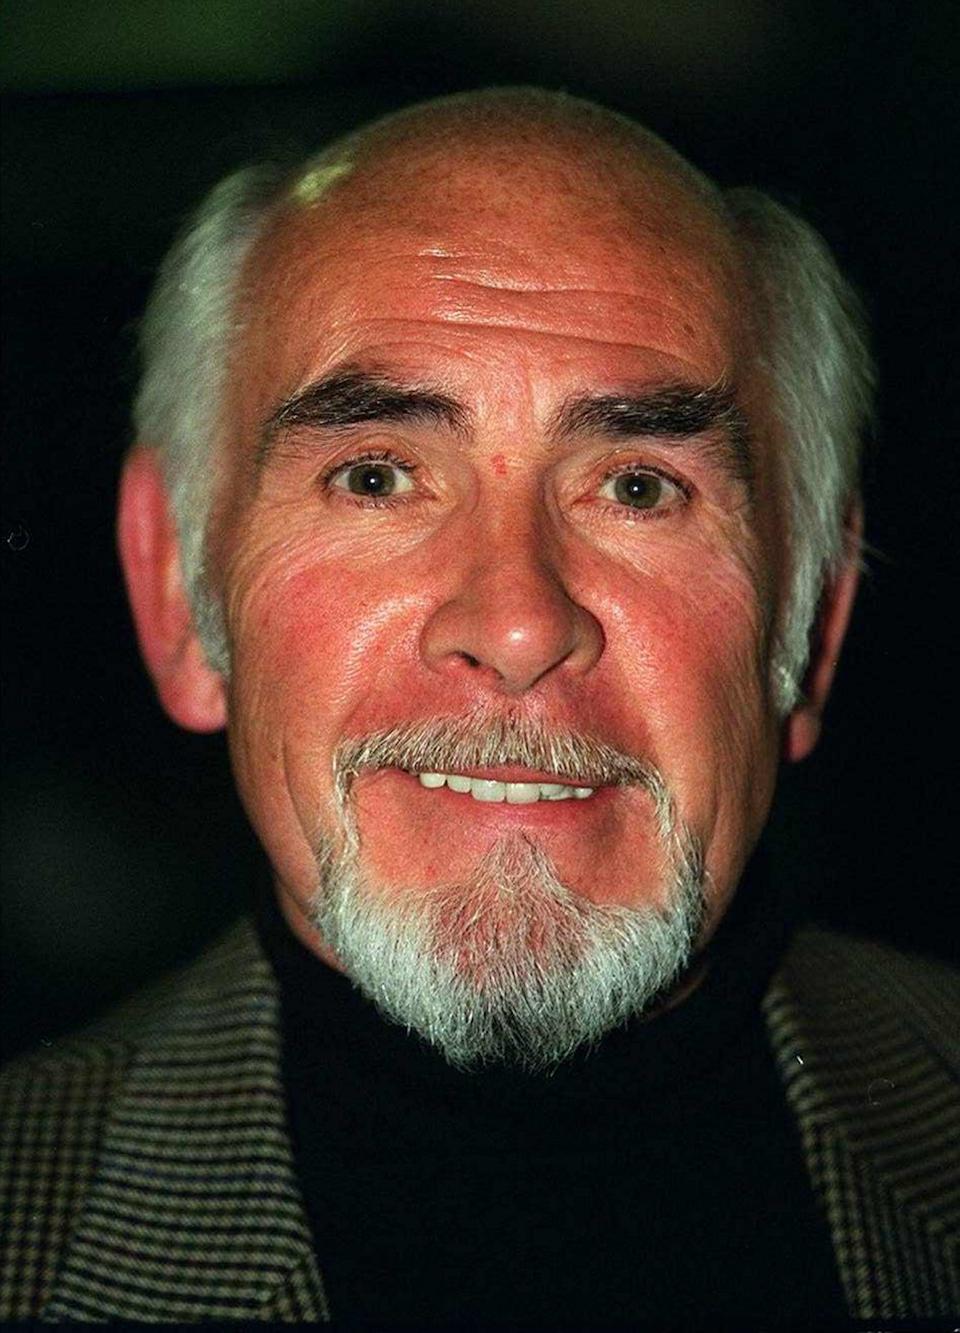 Neil Connery, fratello dell'attore Sean Connery con la barba, aprile 1997 (foto di Mirrorpix / Mirrorpix / Mirrorpix via Getty Images)